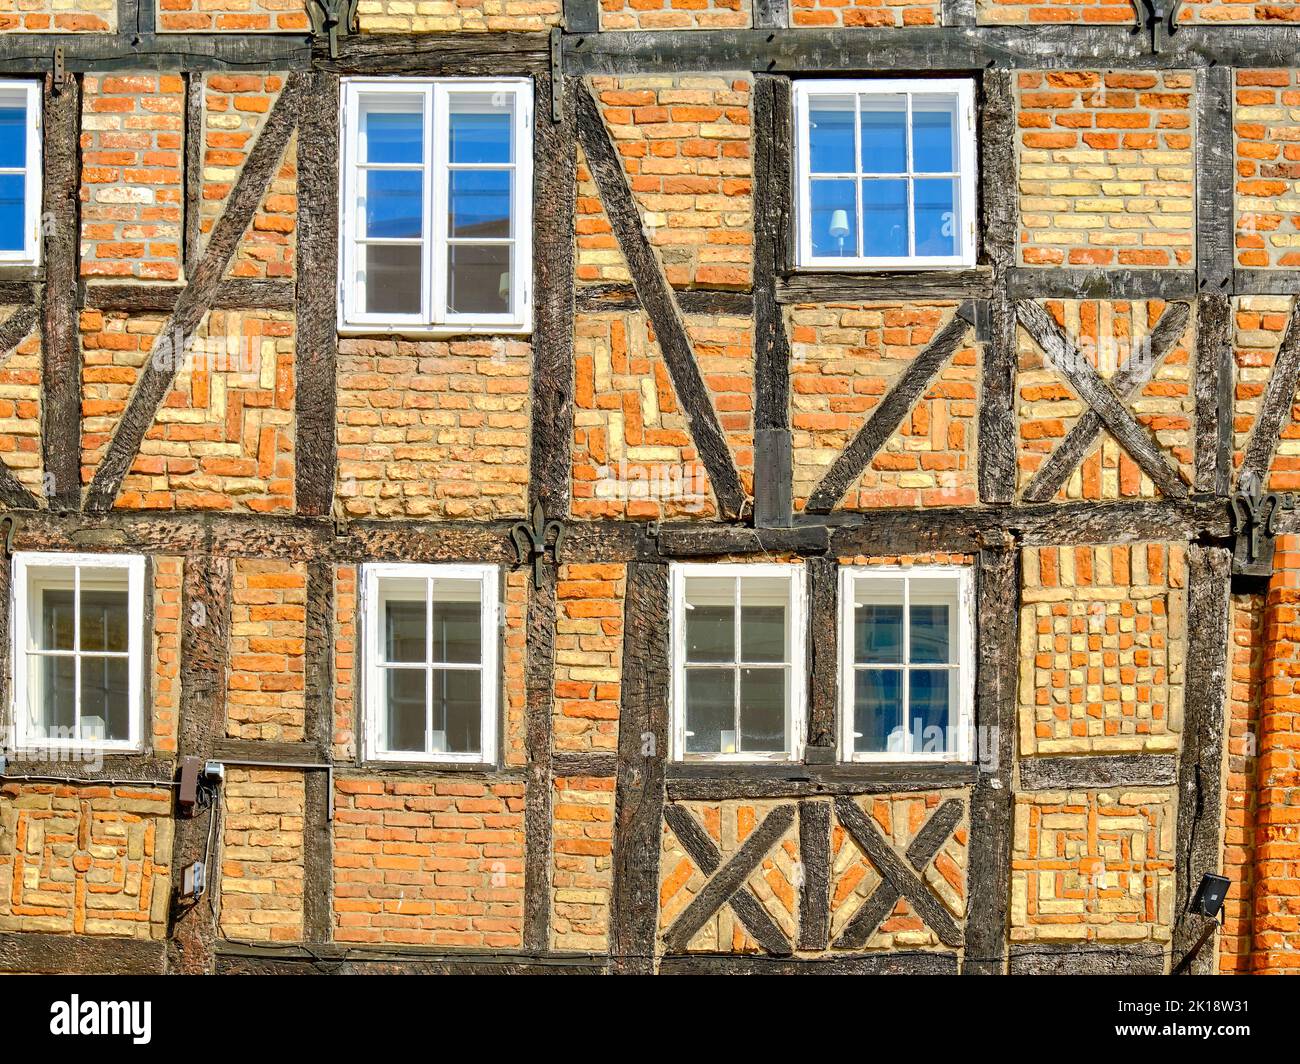 Immagine concettuale e simbolica, concetto dell'edificio a graticcio, illustrato dall'esempio del Brauhaus am Lohberg, Wismar, Germania. Foto Stock